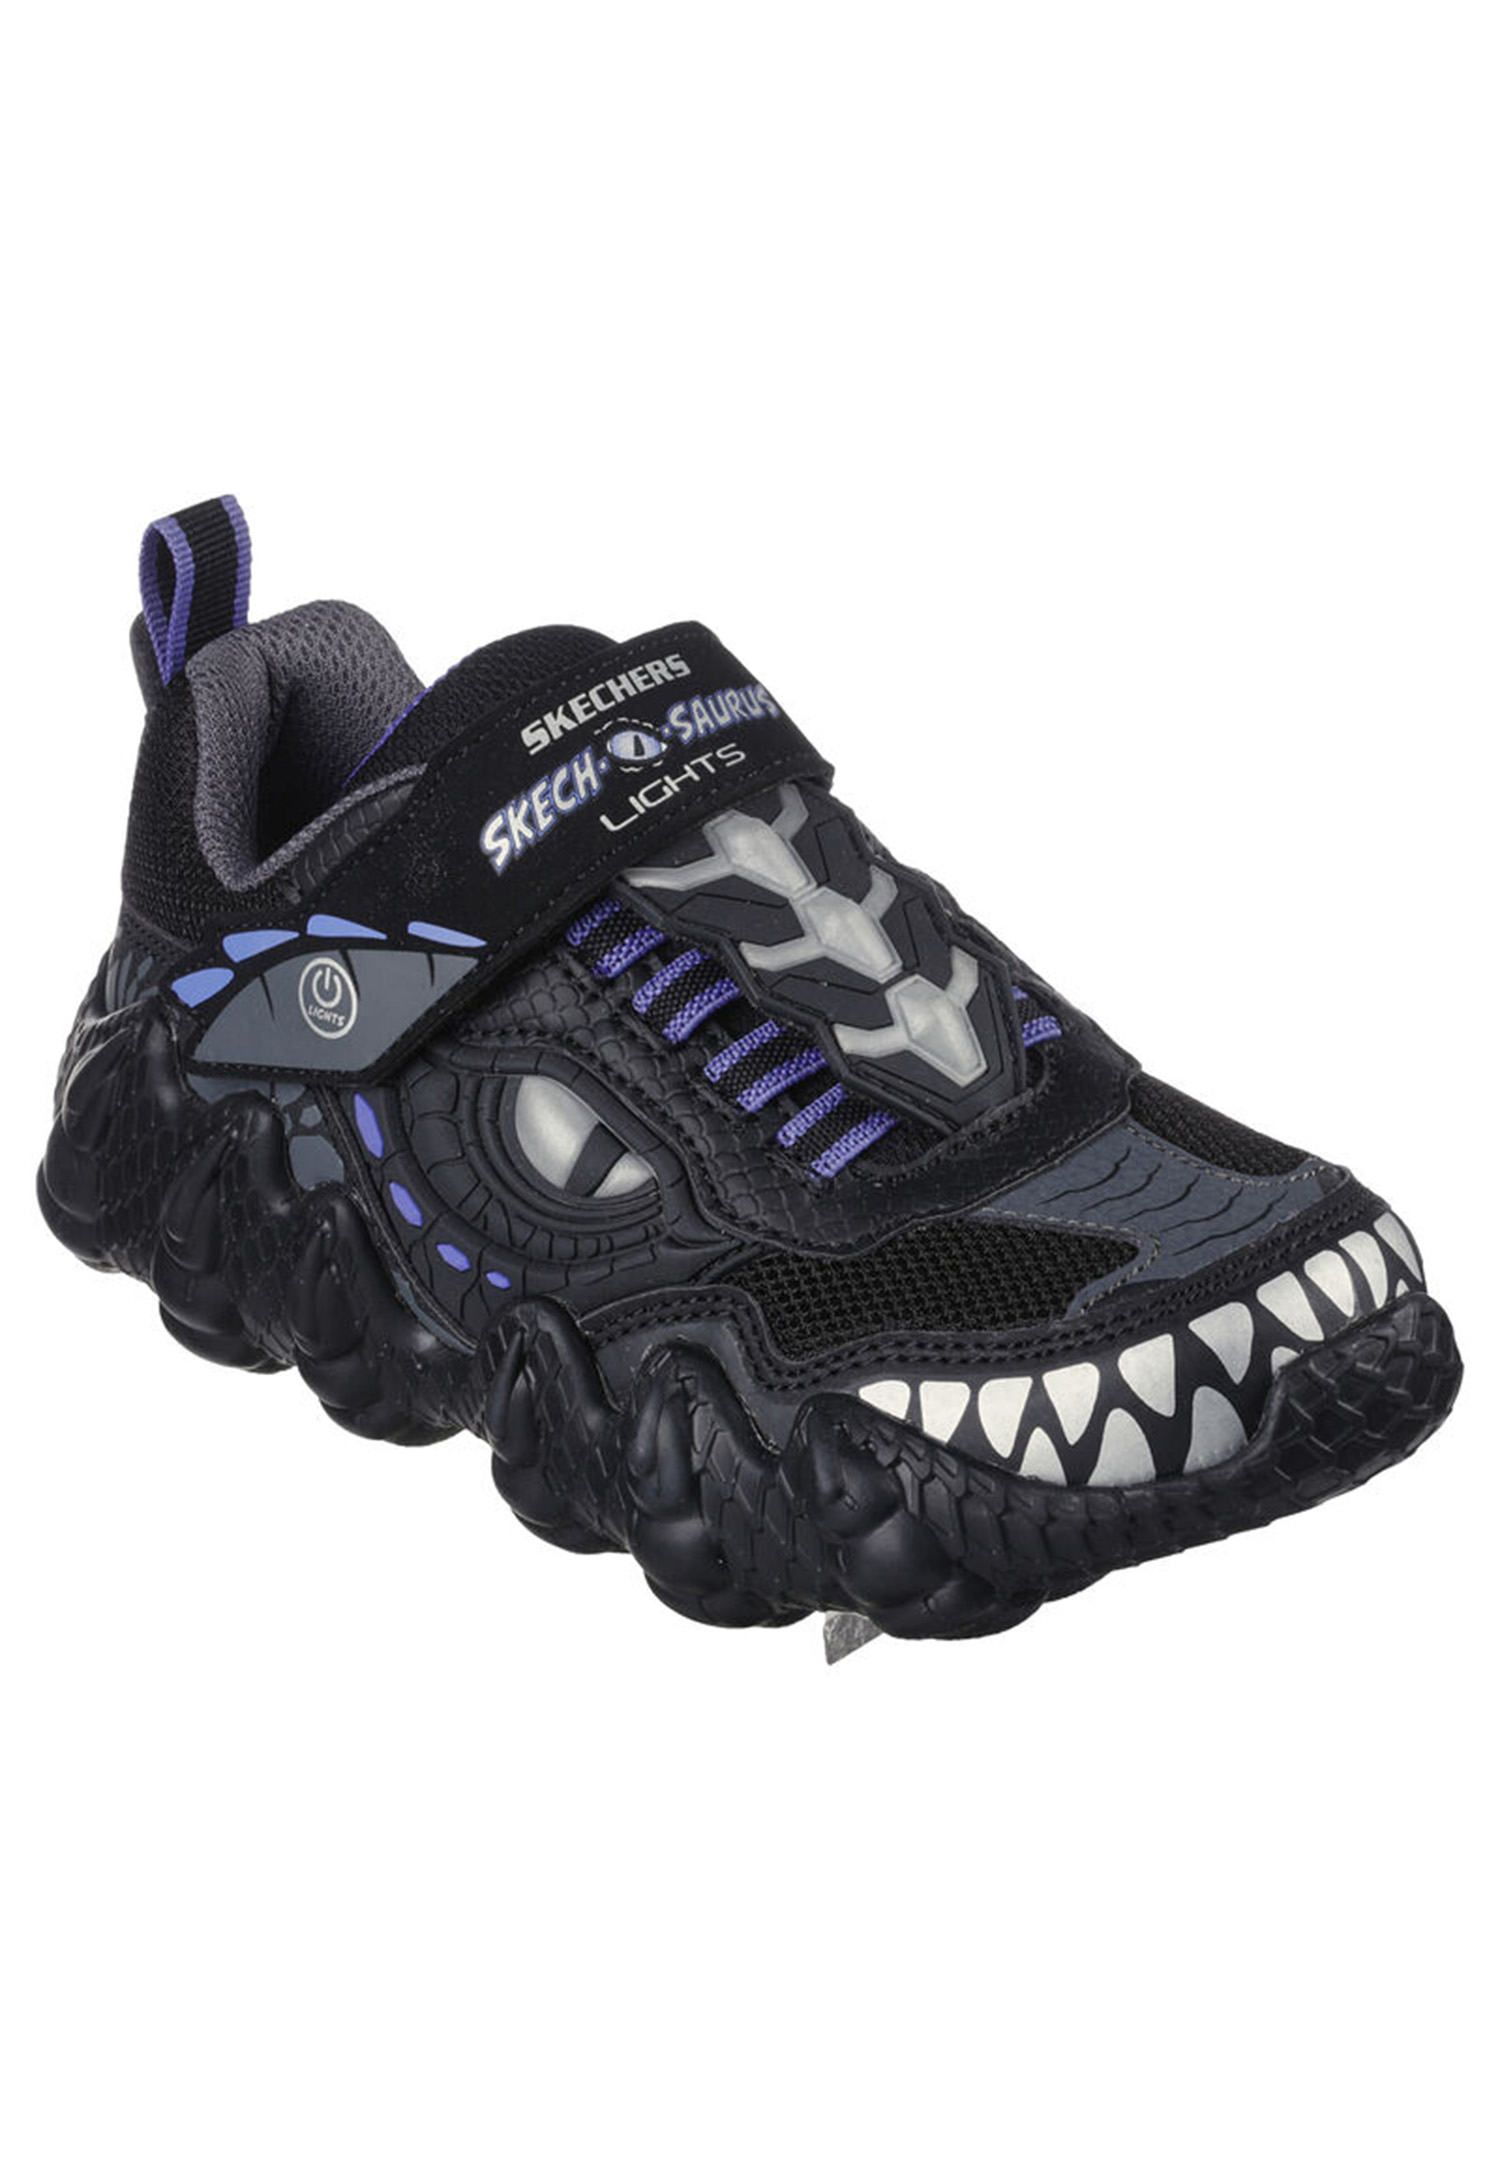 Низкие кроссовки Skechers Low SKECH O SAURUS Dino Tracker, черный низкие кроссовки skechers low skech tracks черный